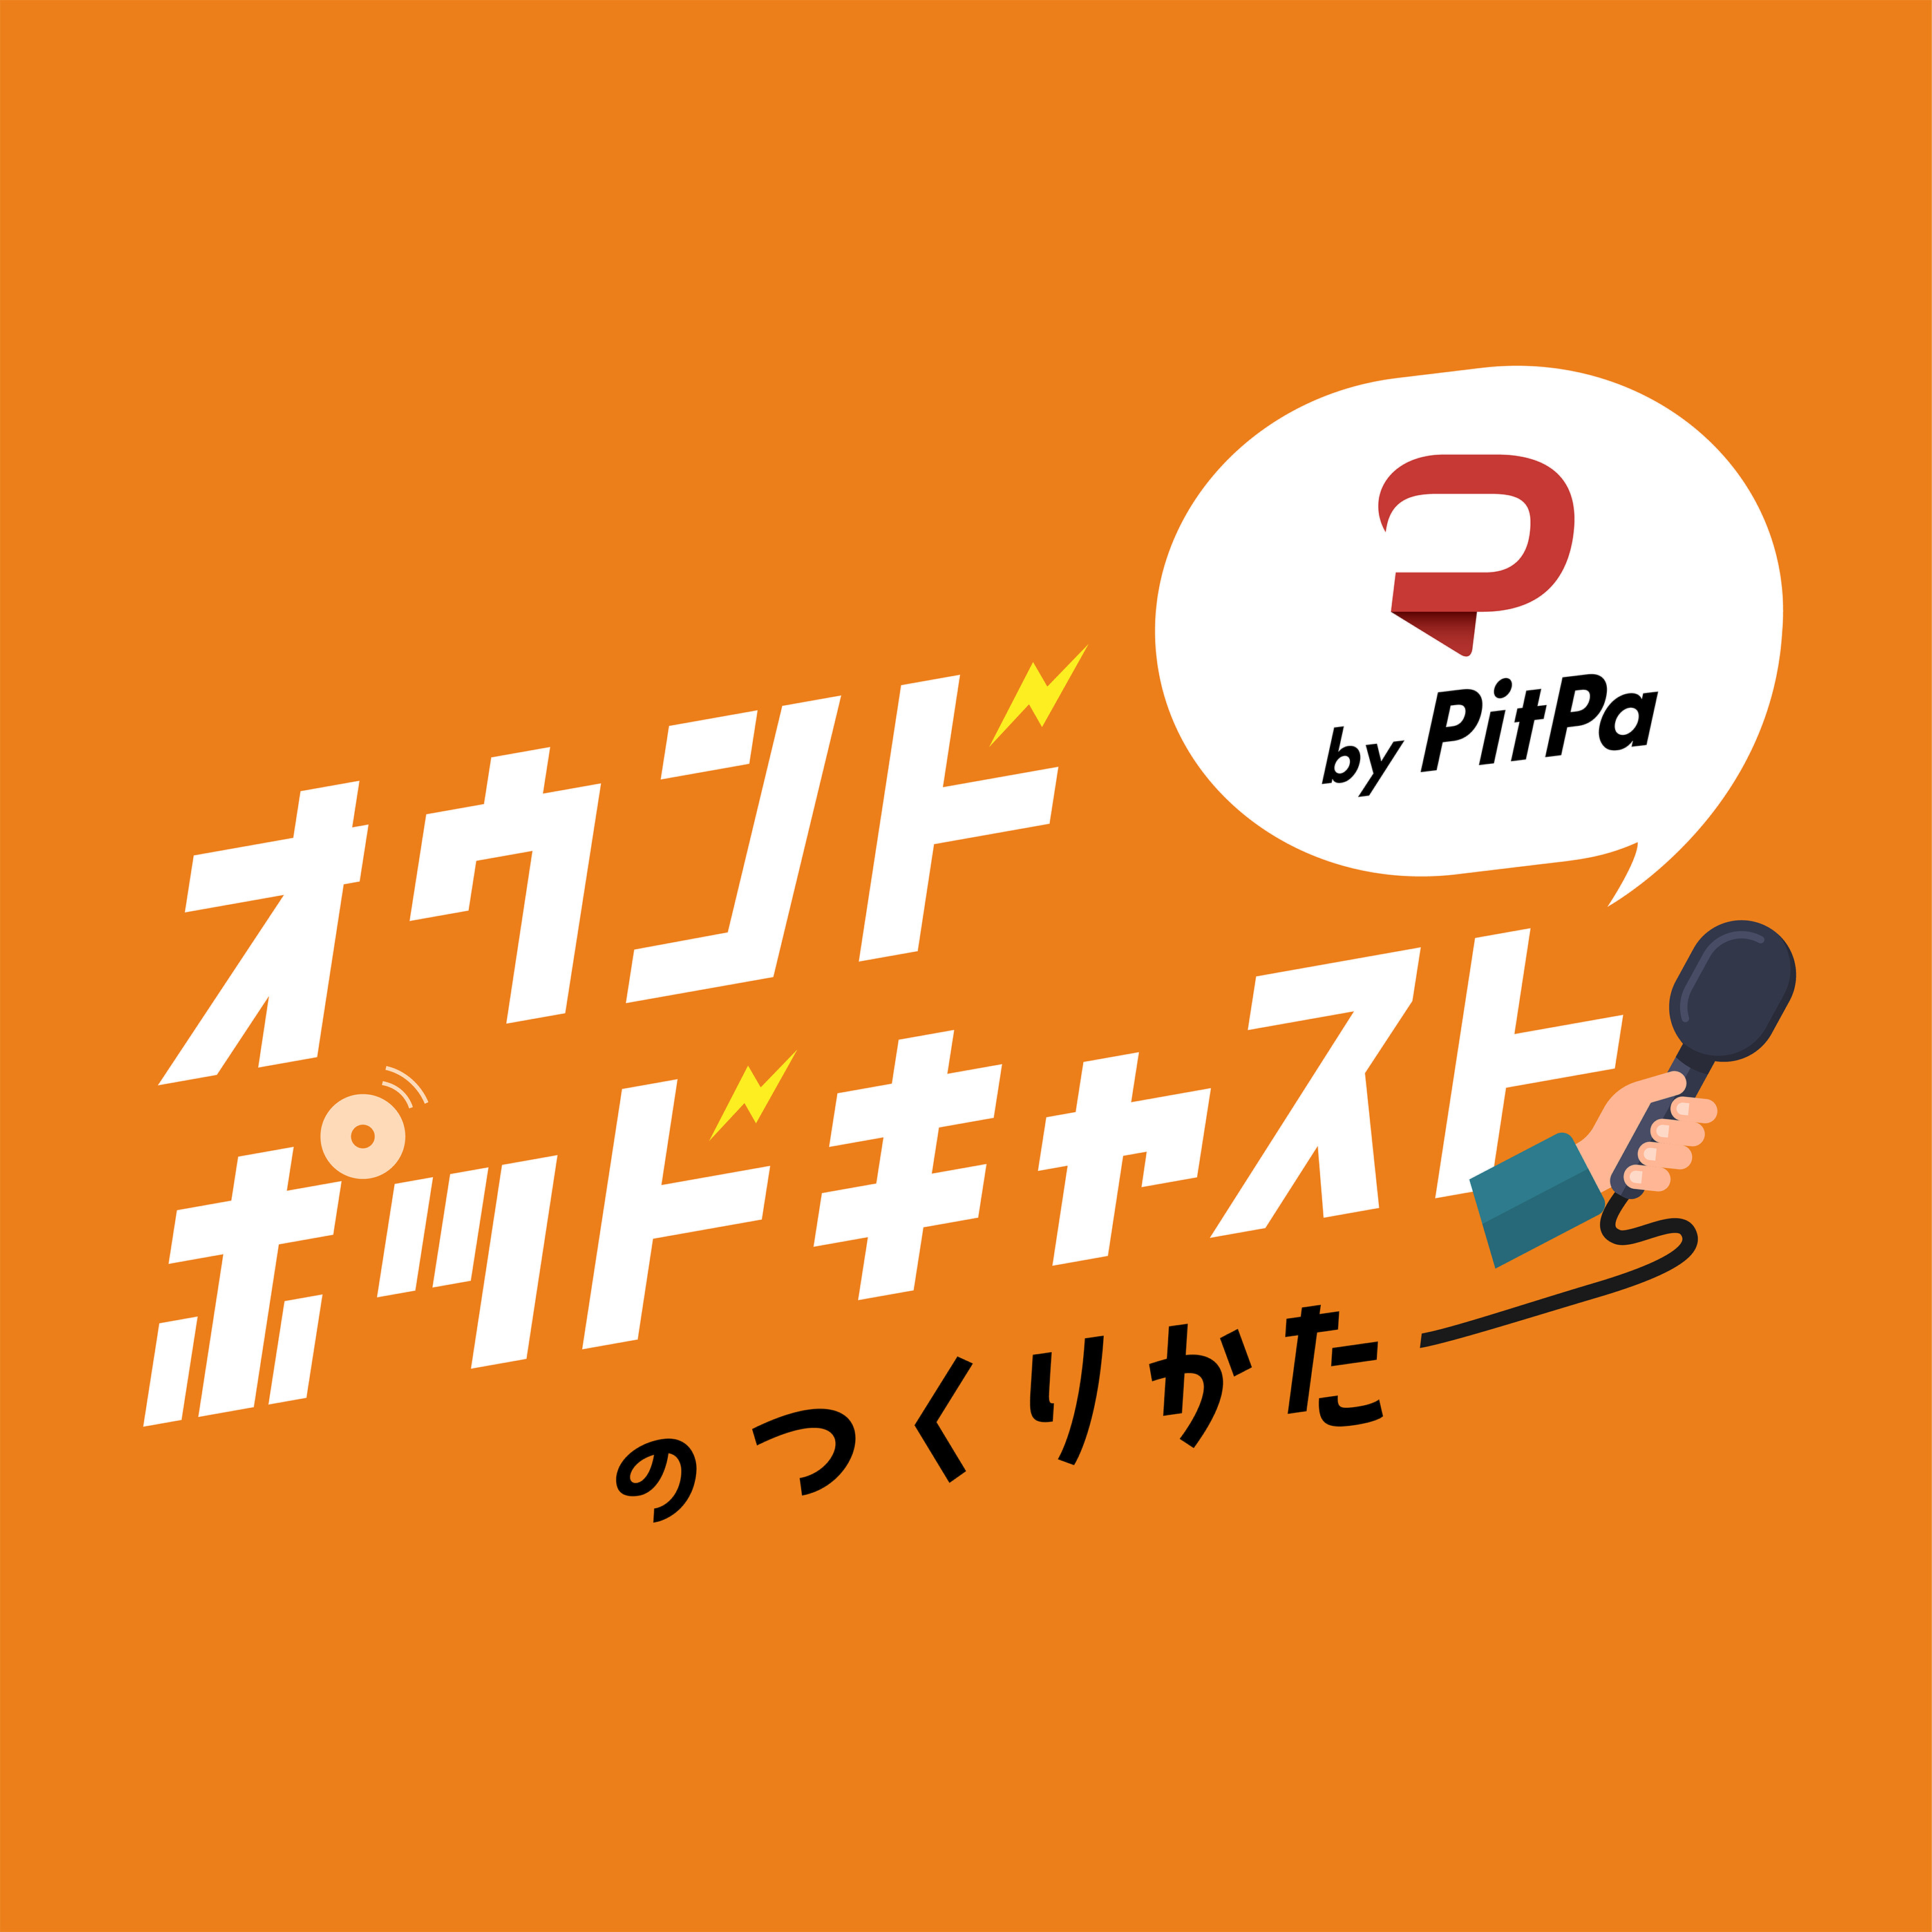 PitPaのインタビュー台本公開。利用・拡散ご自由に。